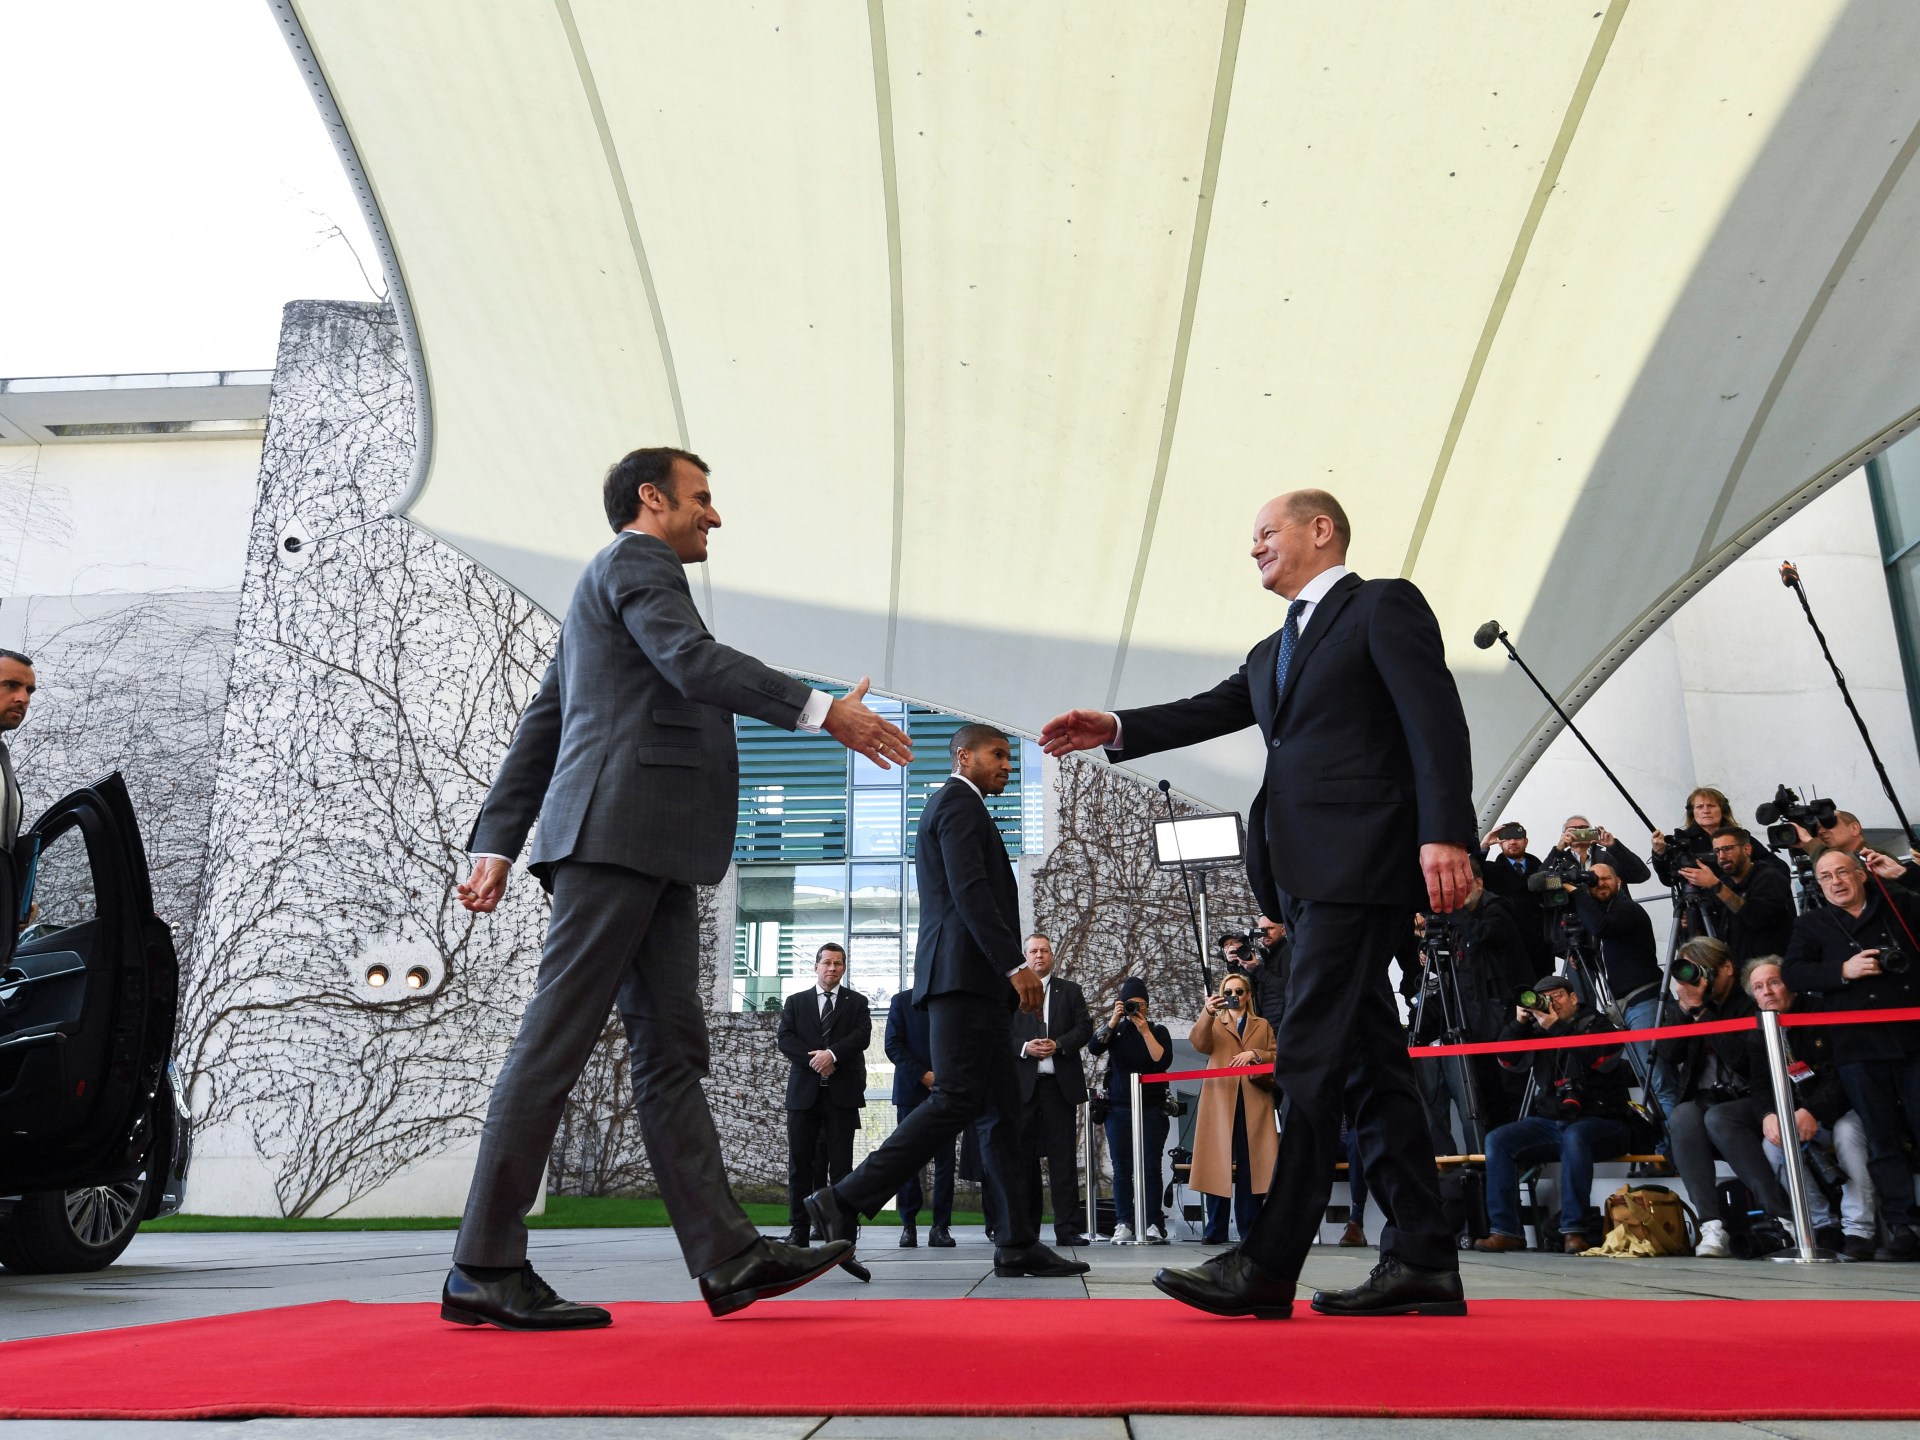 Przywódcy Niemiec, Francji i Polski spotykają się, aby naprawić ogrodzenie wojny na Ukrainie |  Wiadomość o wojnie między Rosją a Ukrainą